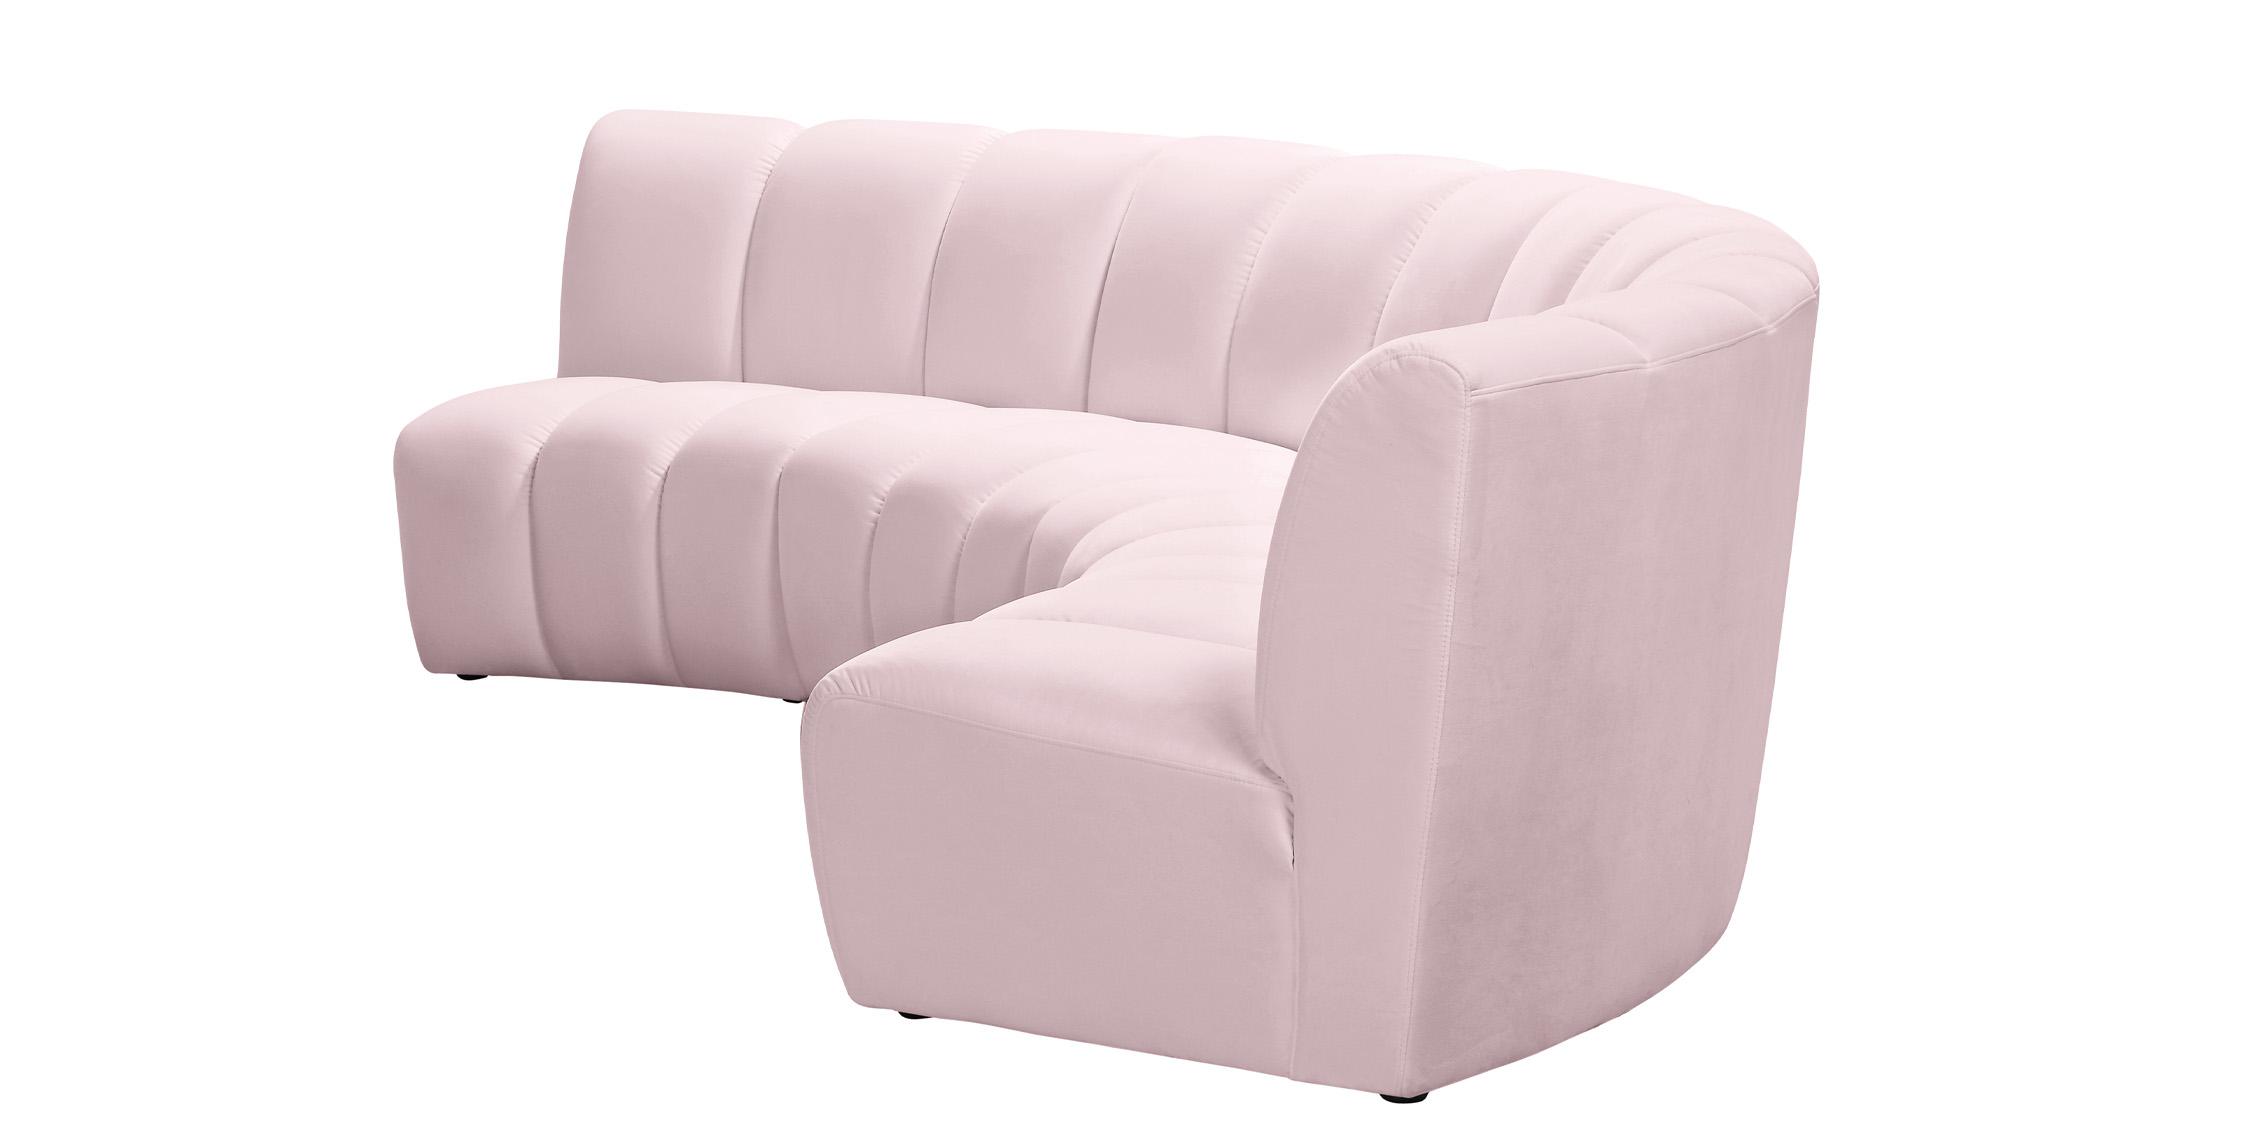 

    
638Pink-3PC Meridian Furniture Modular Sectional Sofa
